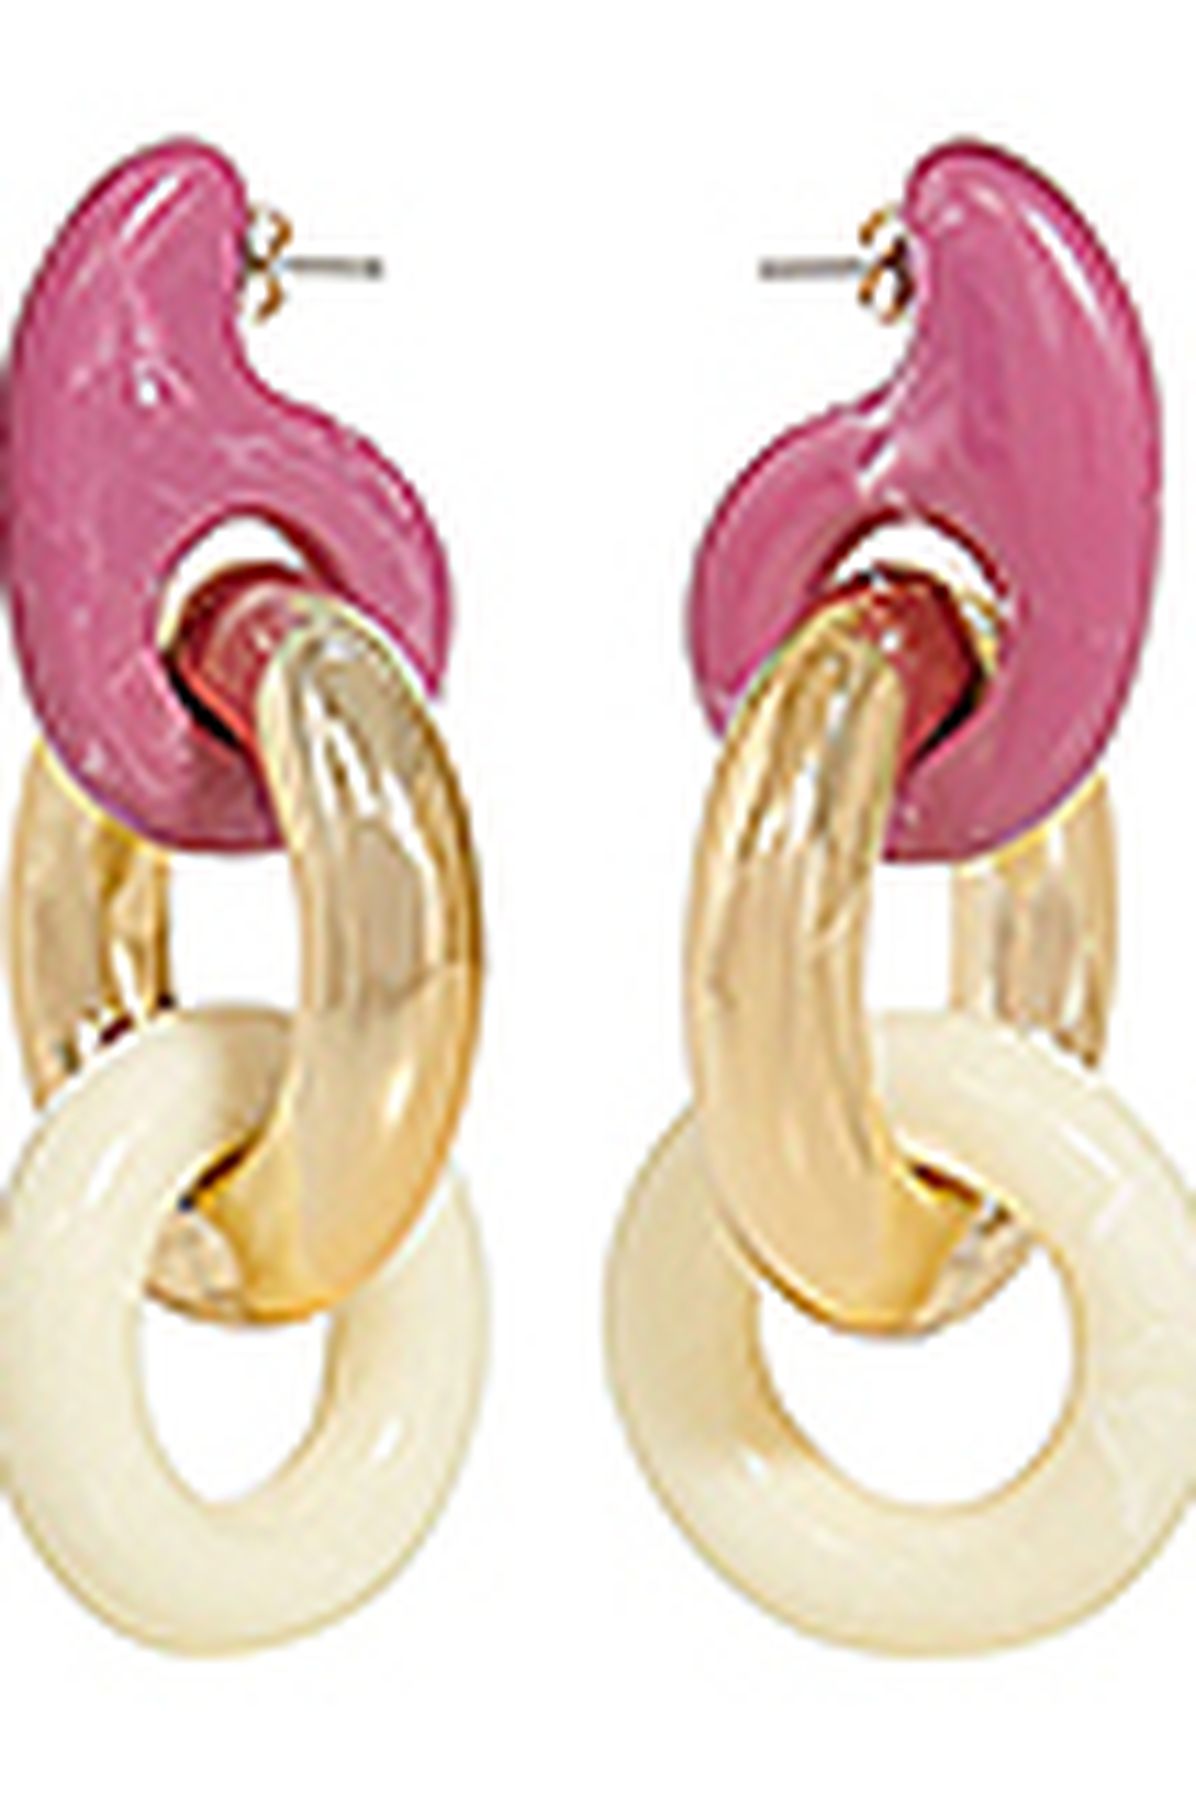  Fabyon earrings